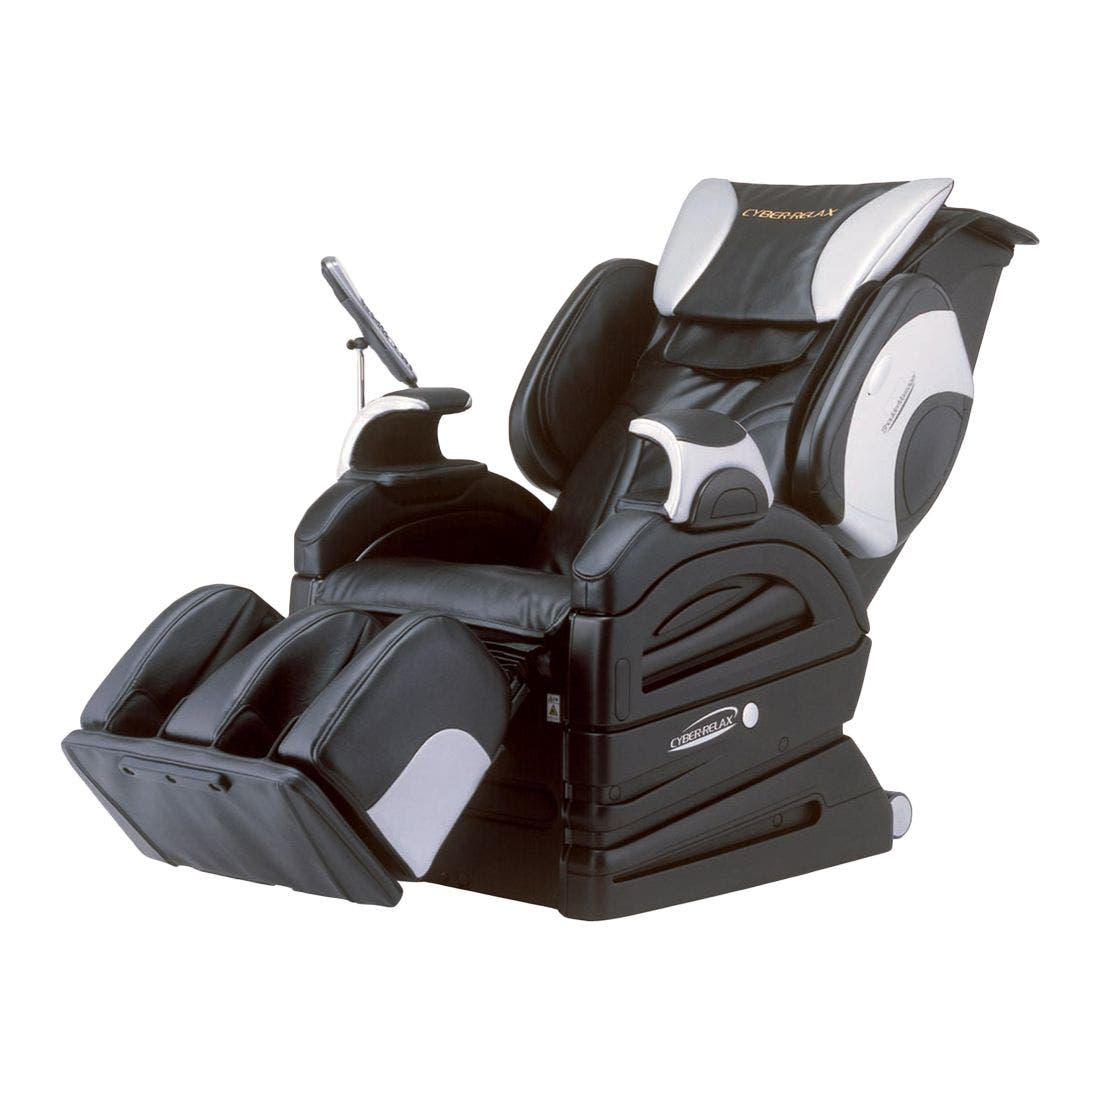 สินค้าเพื่อสุขภาพ เก้าอี้นวดไฟฟ้า สีสีดำ-SB Design Square